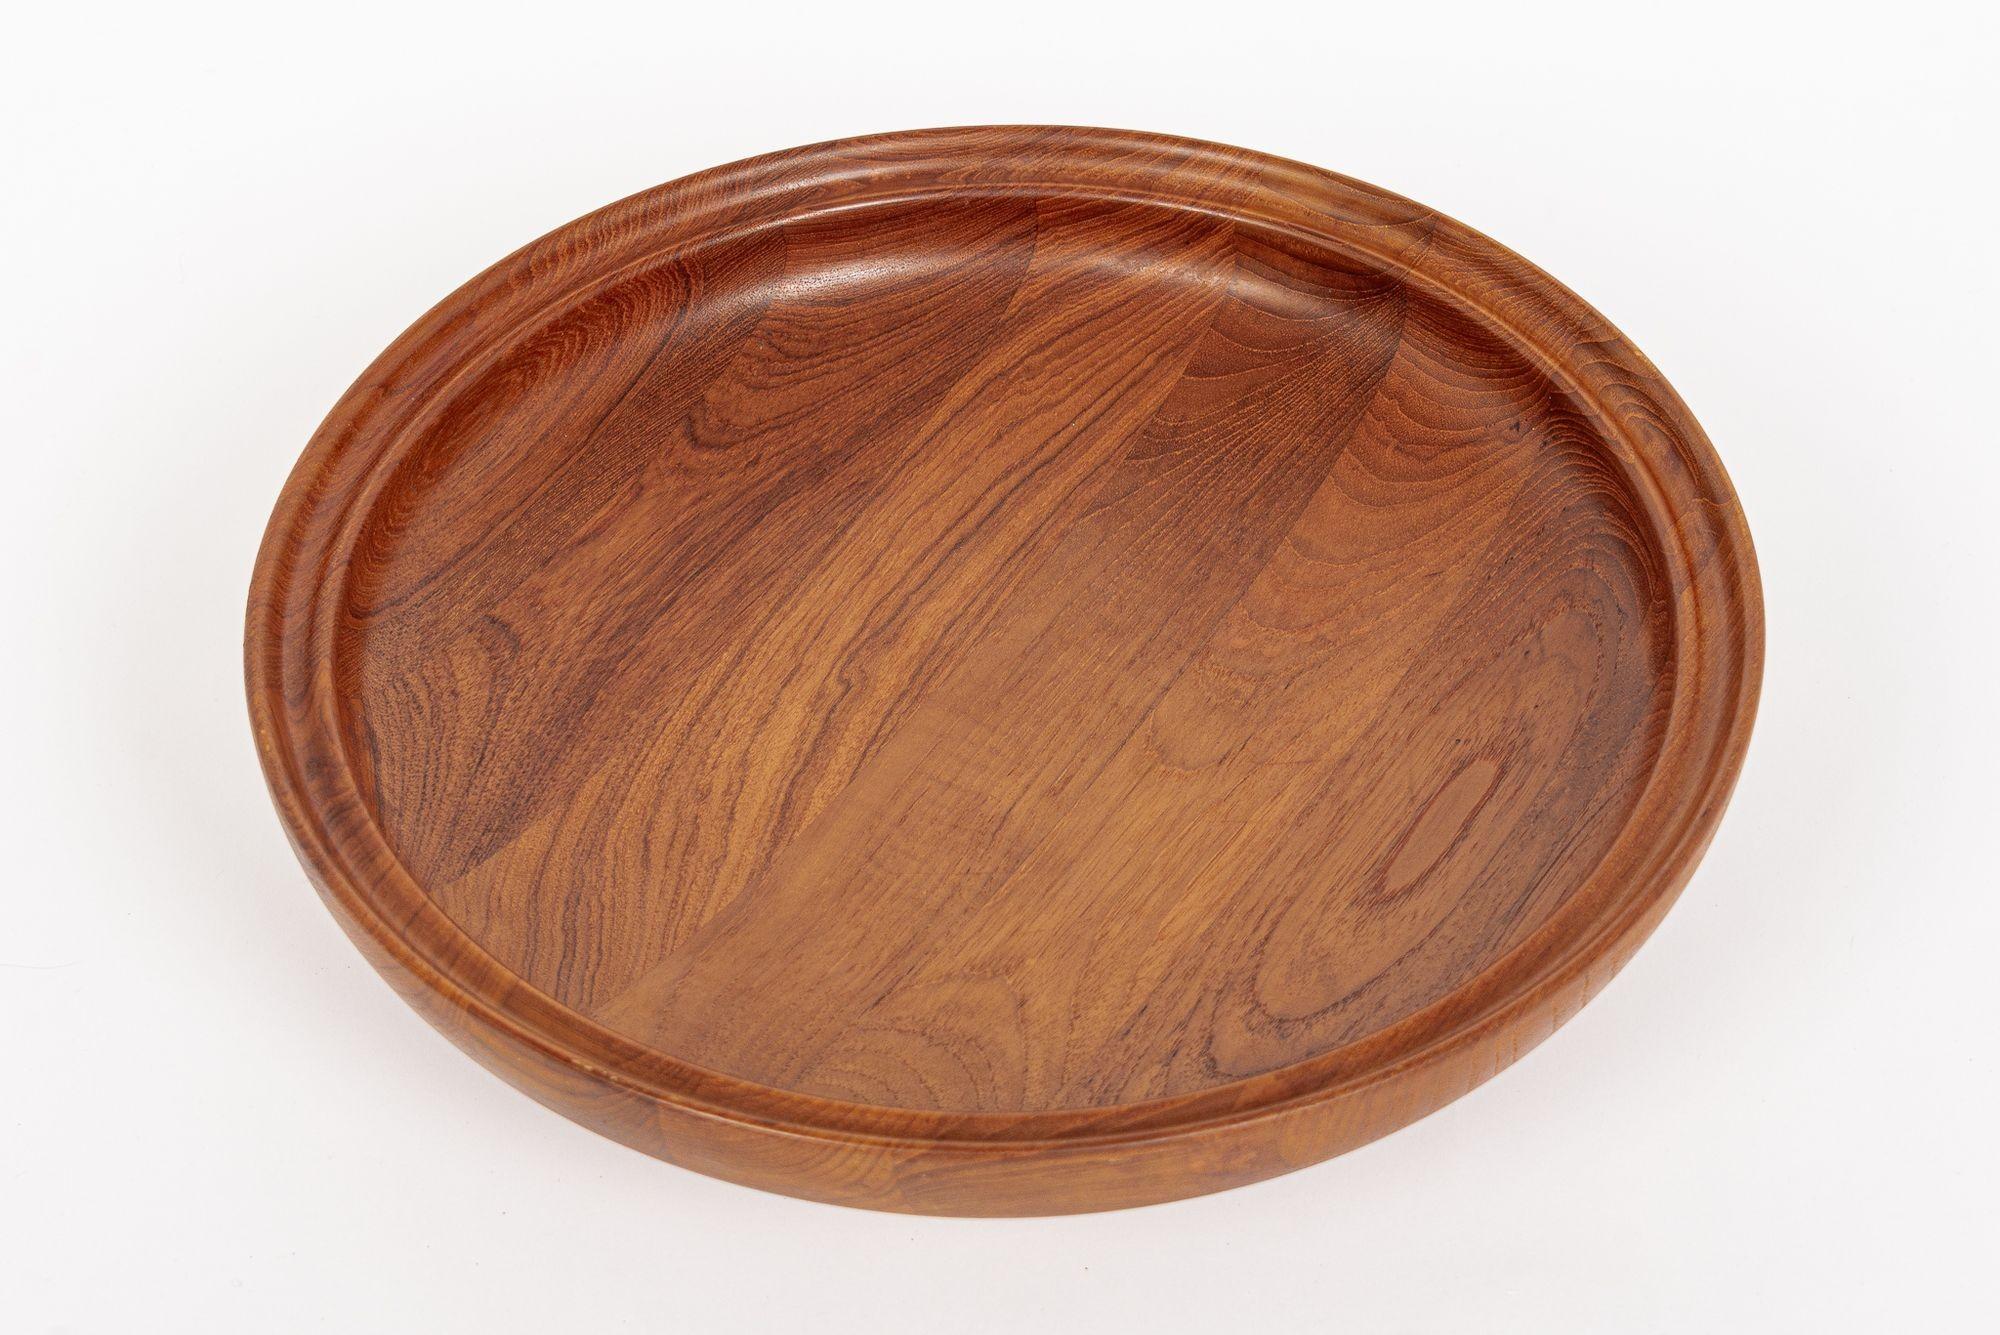 Danish Modern Large Teak Wood Bowl by Henning Koppel for Georg Jensen For Sale 1